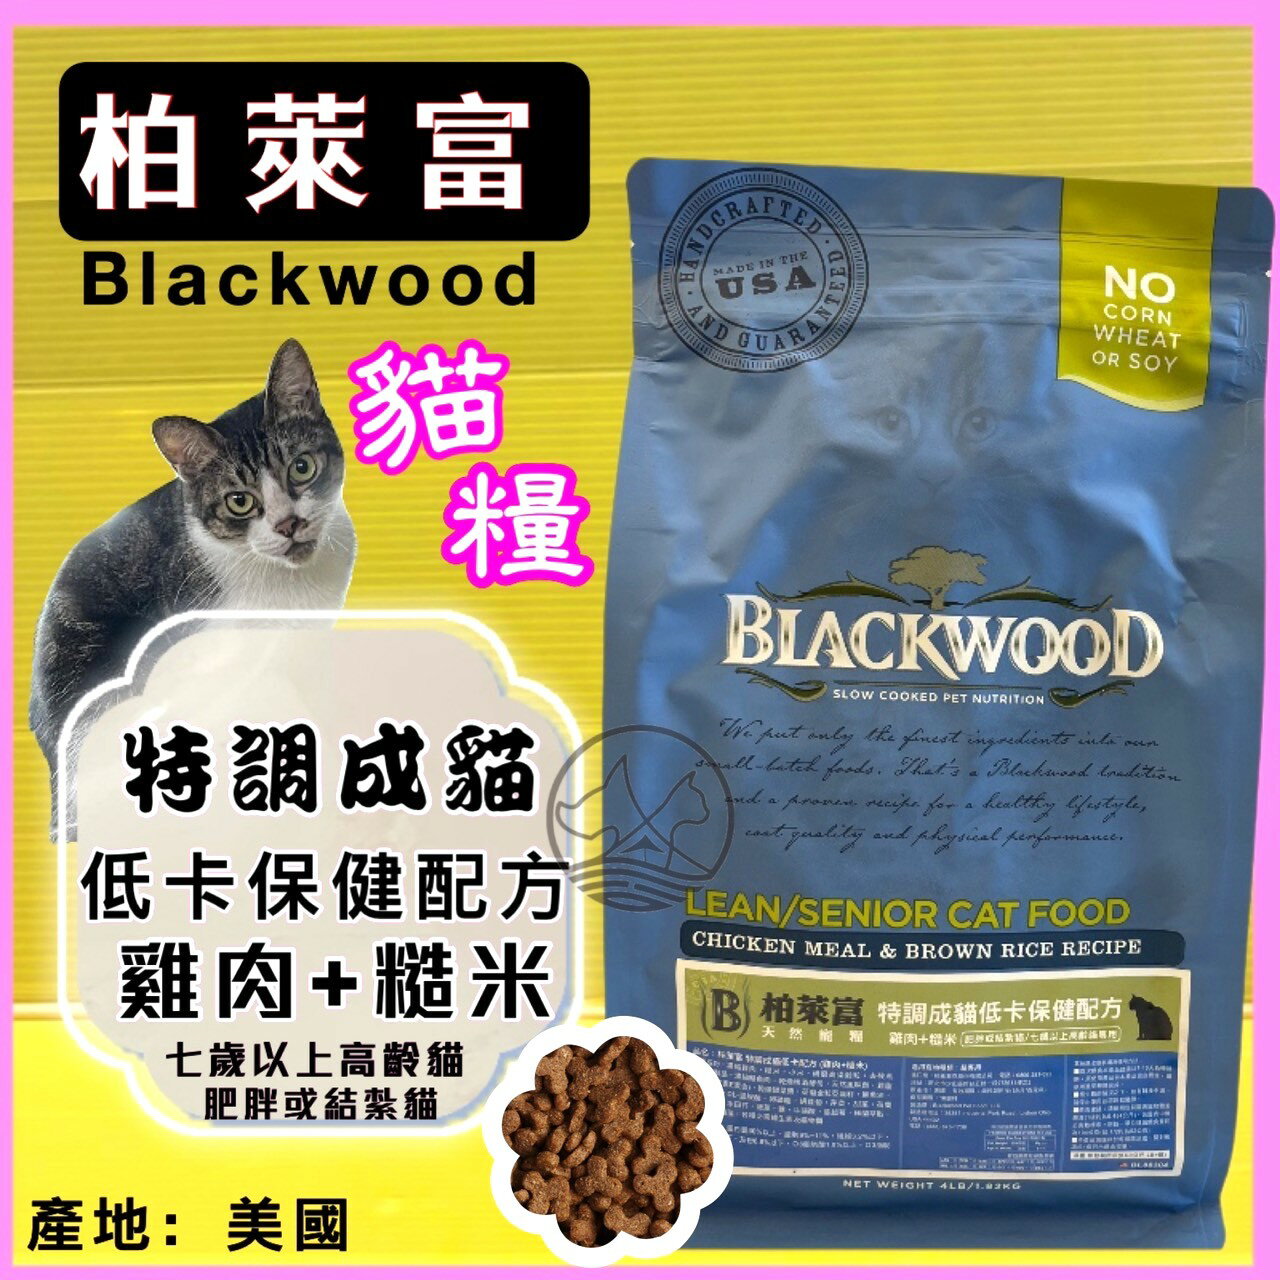 柏萊富➤特調 成貓 低卡 配方(雞肉+糙米)4磅/包➤美國 Black wood 貓 飼料 乾糧✪四寶的店✪